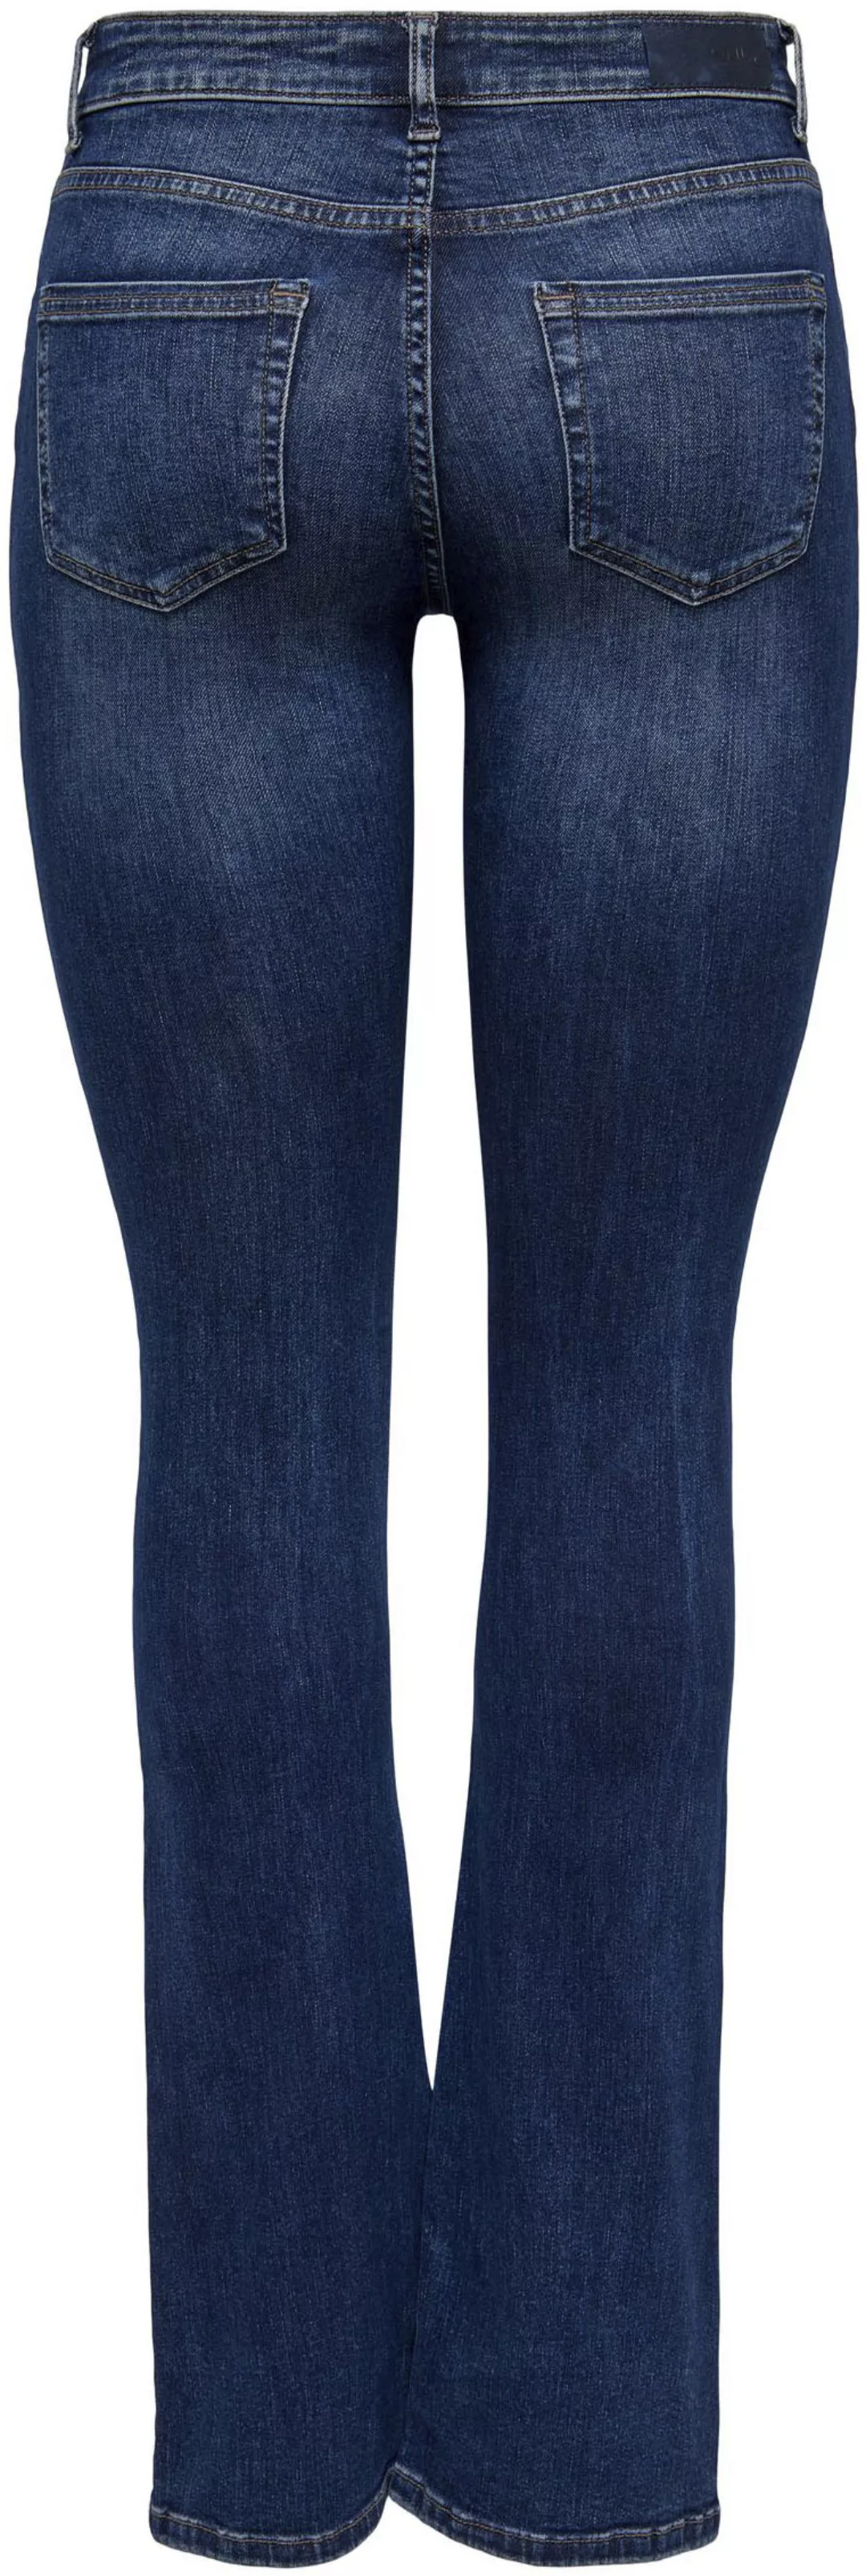 Only Damen Jeans ONLBLUSH MID FLARED Blau - Dark Blue Denim günstig online kaufen